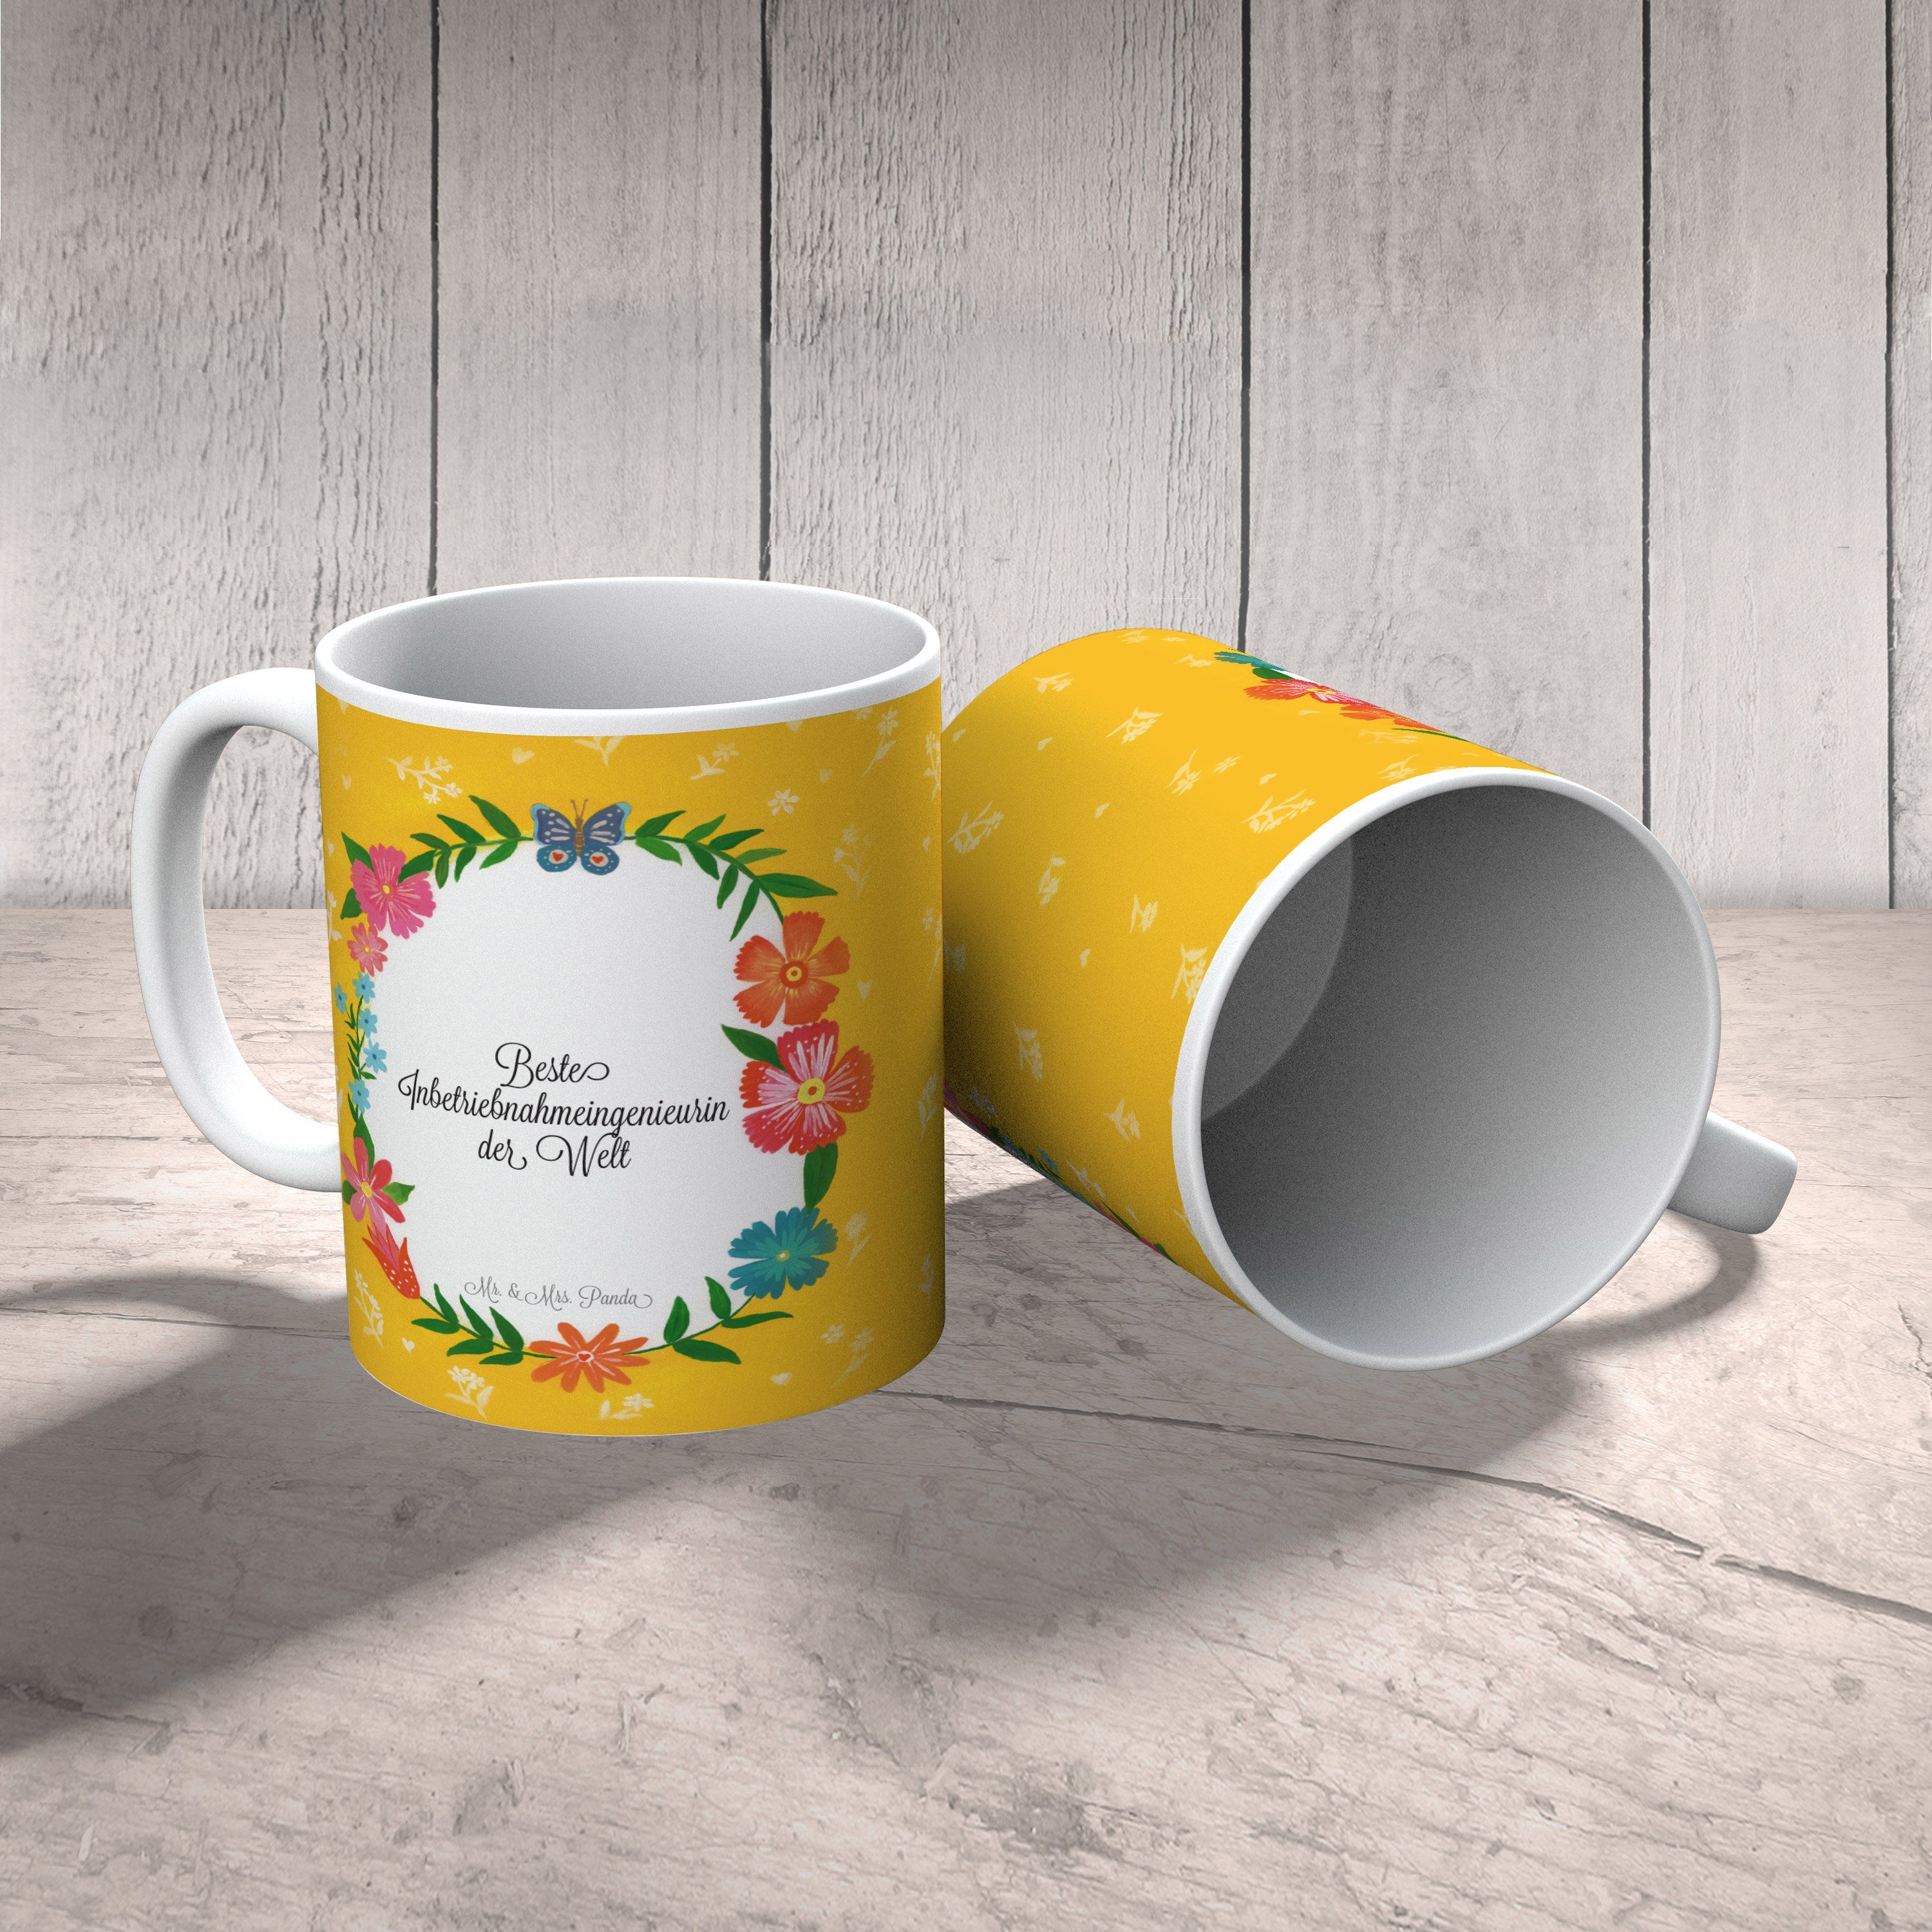 Mr. & Mrs. Panda Tasse Keramik Geschenk, Inbetriebnahmeingenieurin Tasse, Gratulation, B, - Teetasse